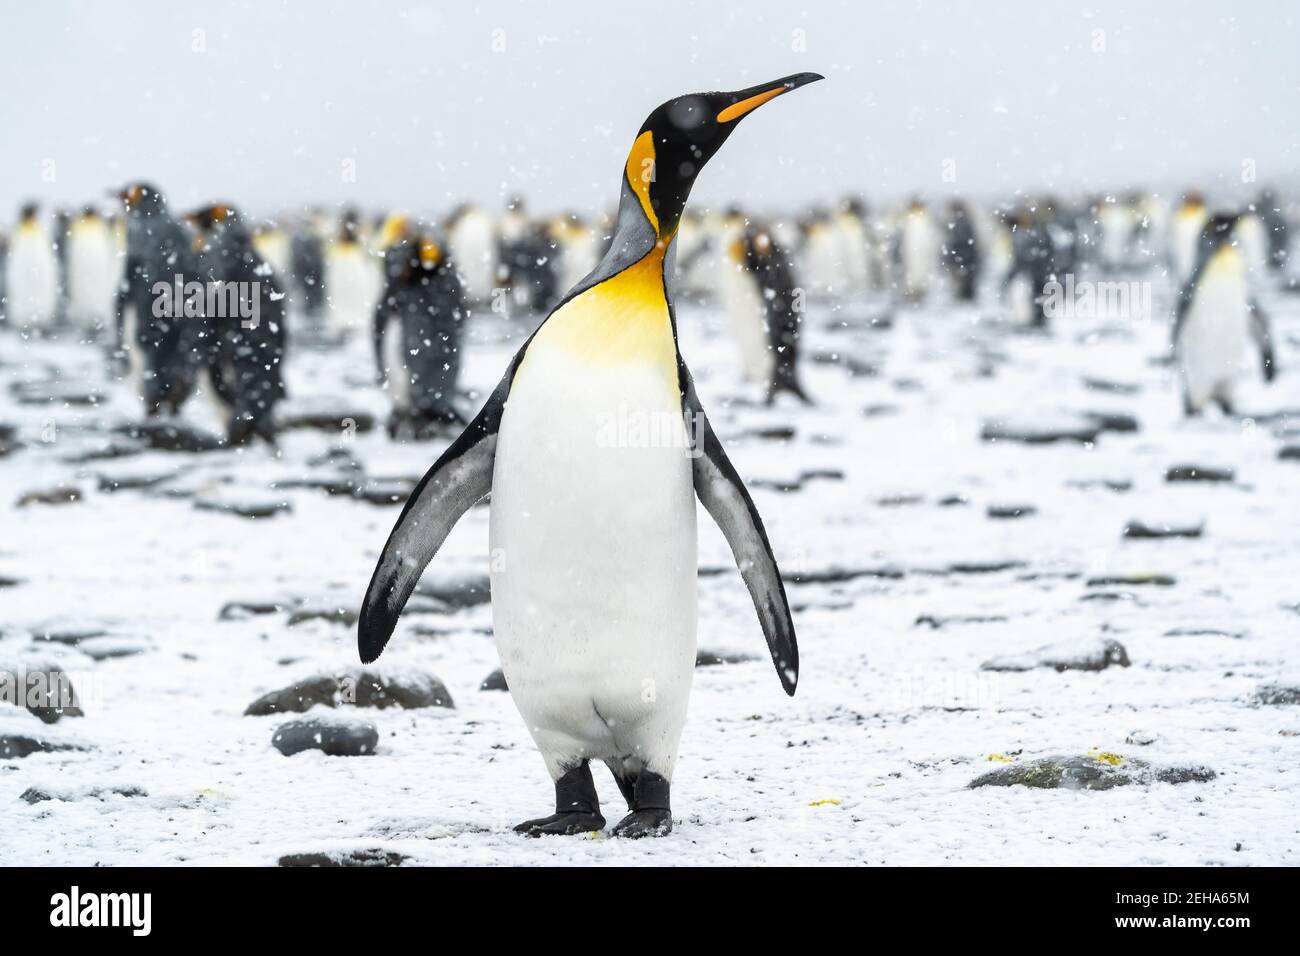 Un pinguino del re si guarda verso il cielo mentre la neve cade dolcemente. Sullo sfondo, altri membri della colonia di pinguini godono anche del raro sno estivo della Georgia del Sud Foto Stock